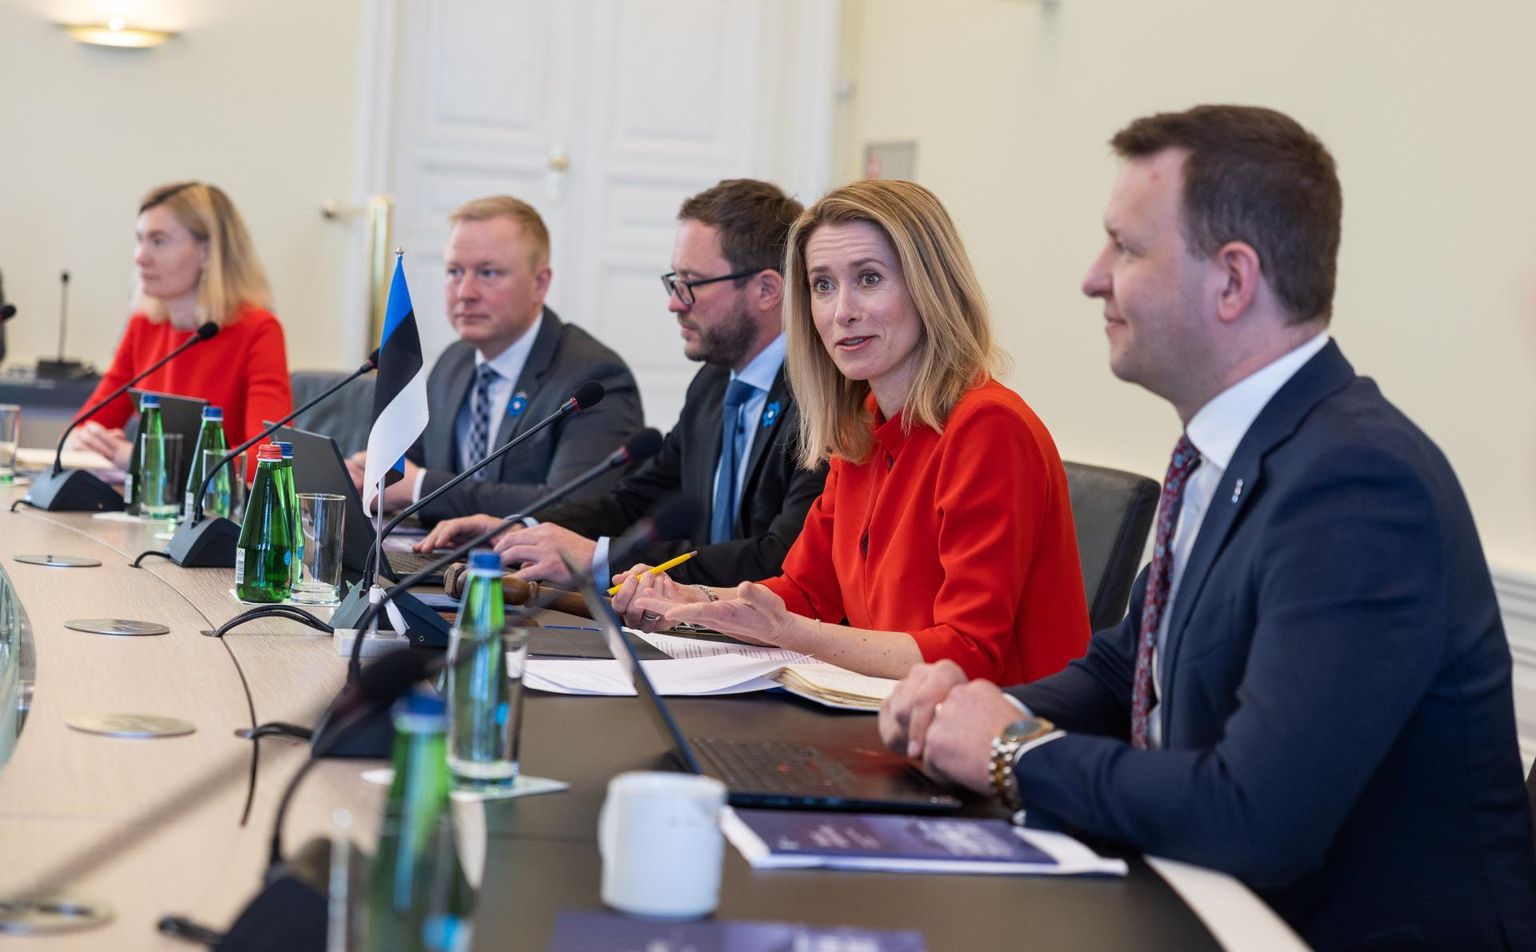 Uus valitsus pidas esimese istungi 20. aprillil. Paremalt Lauri Läänemets, Kaja Kallas, Margus Tsahkna, Mart Võrklaev ja Riina Sikkut. Nüüd on allkirja saanud ka valitsuse tegevusprogramm aastateks 2023–2027.